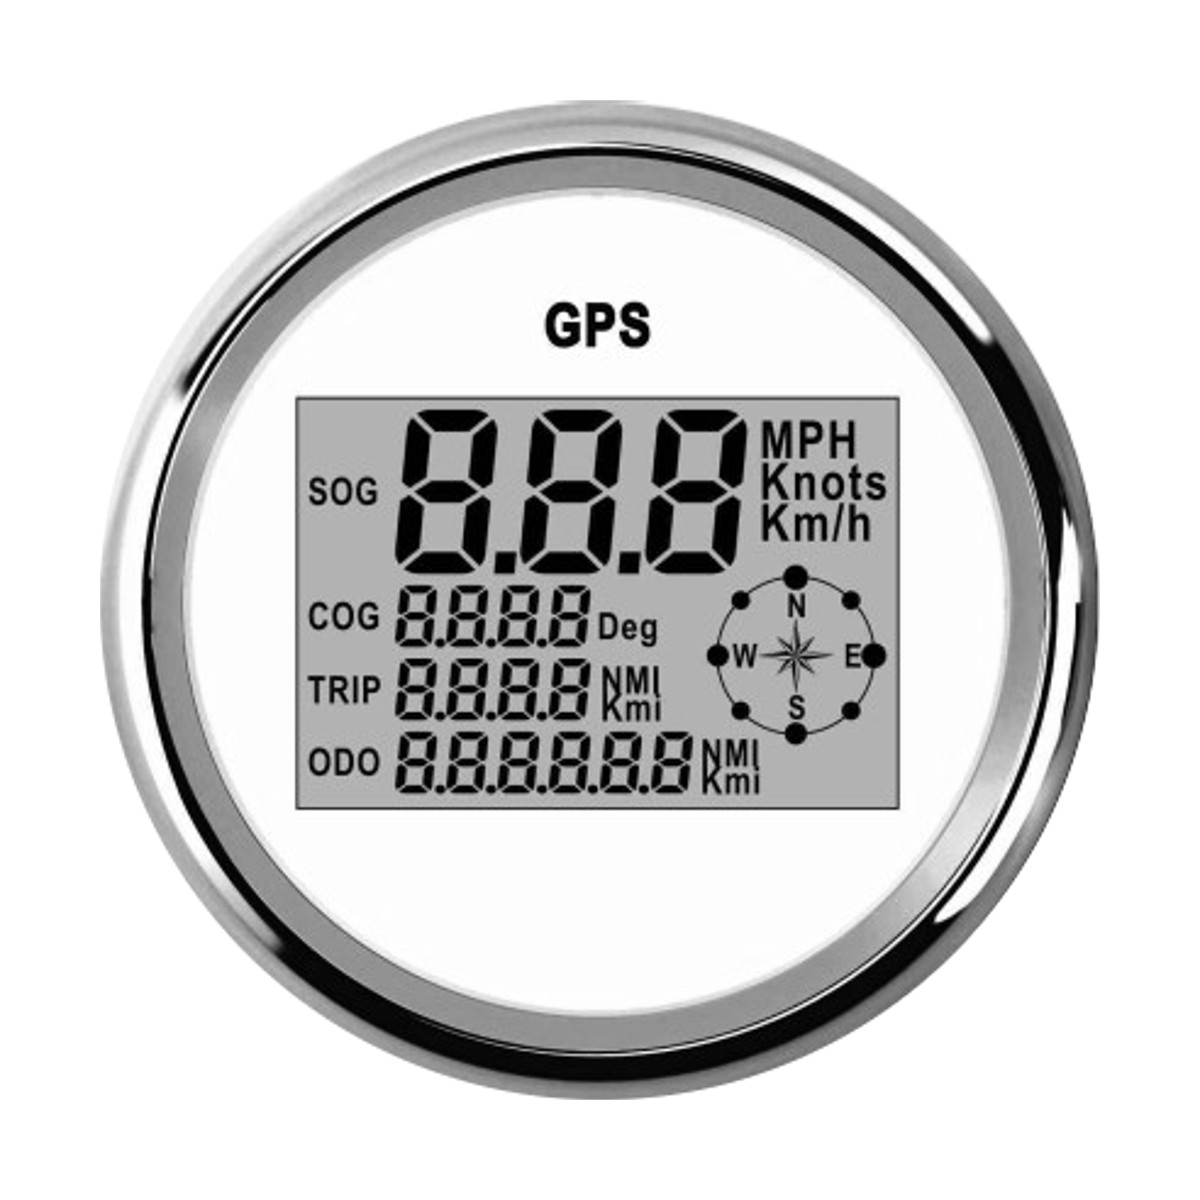 

85mm Waterproof GPS Digital Speedometer Odometer Gauge For Auto Car Truck Marine Motorcycle